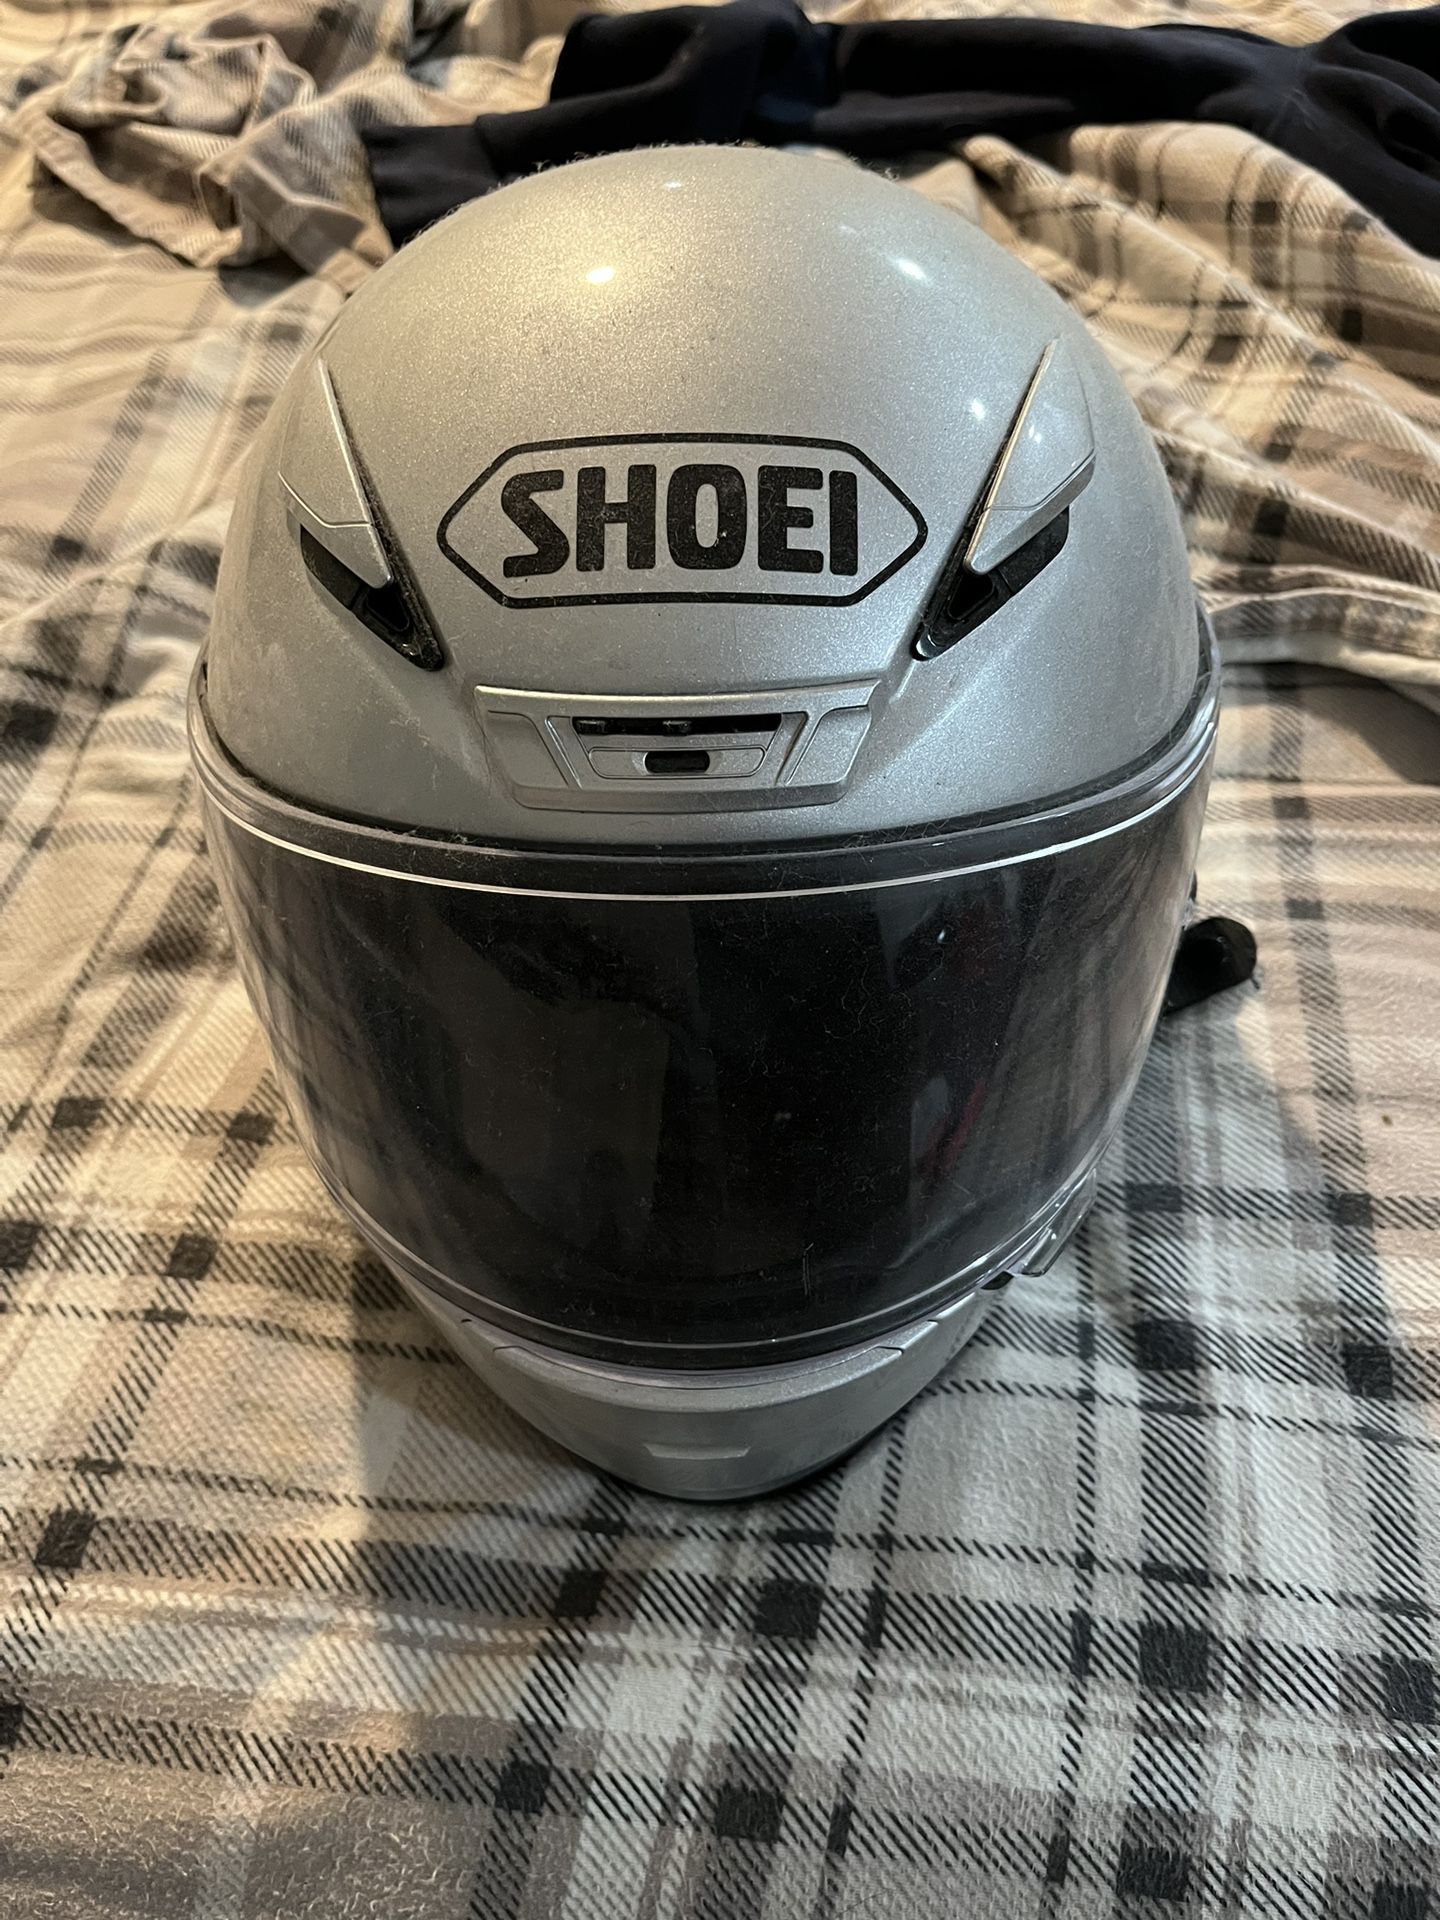 Shoei Helmet With Sena 5s